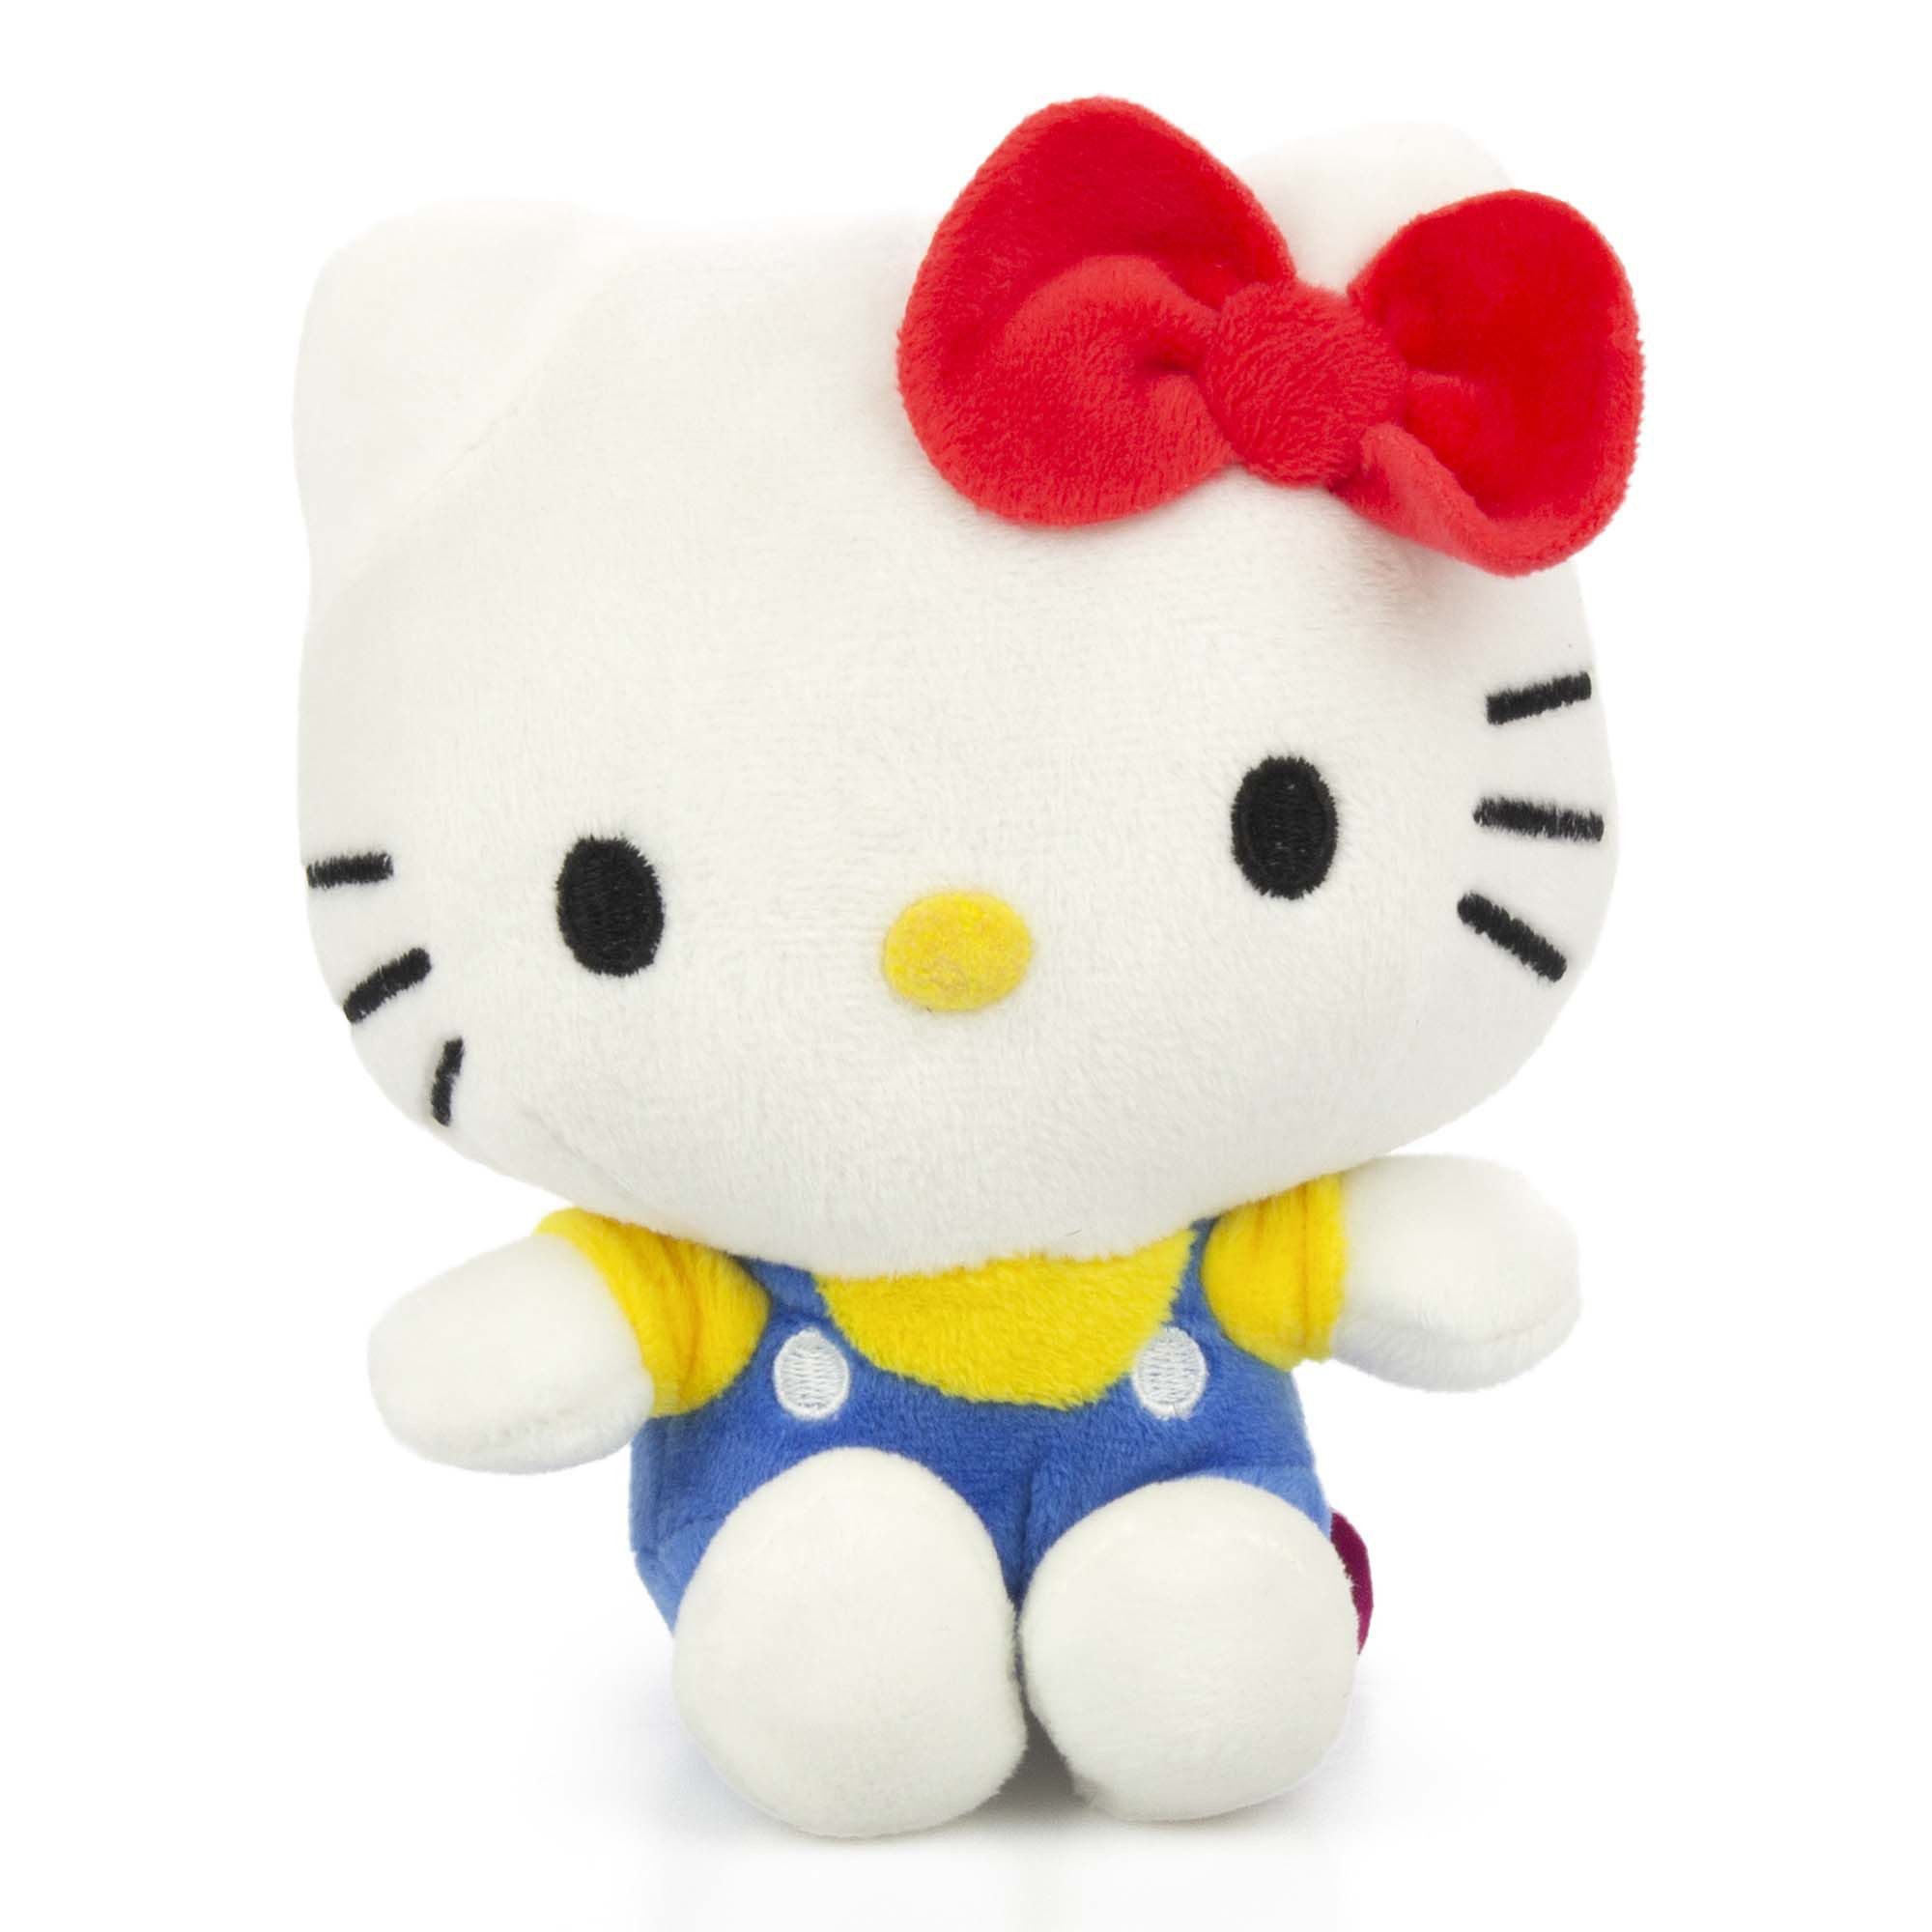 Tinisu Plüschfigur Hello Kitty Kuscheltier - 18 cm Plüschtier Kinder weiches Stofftier